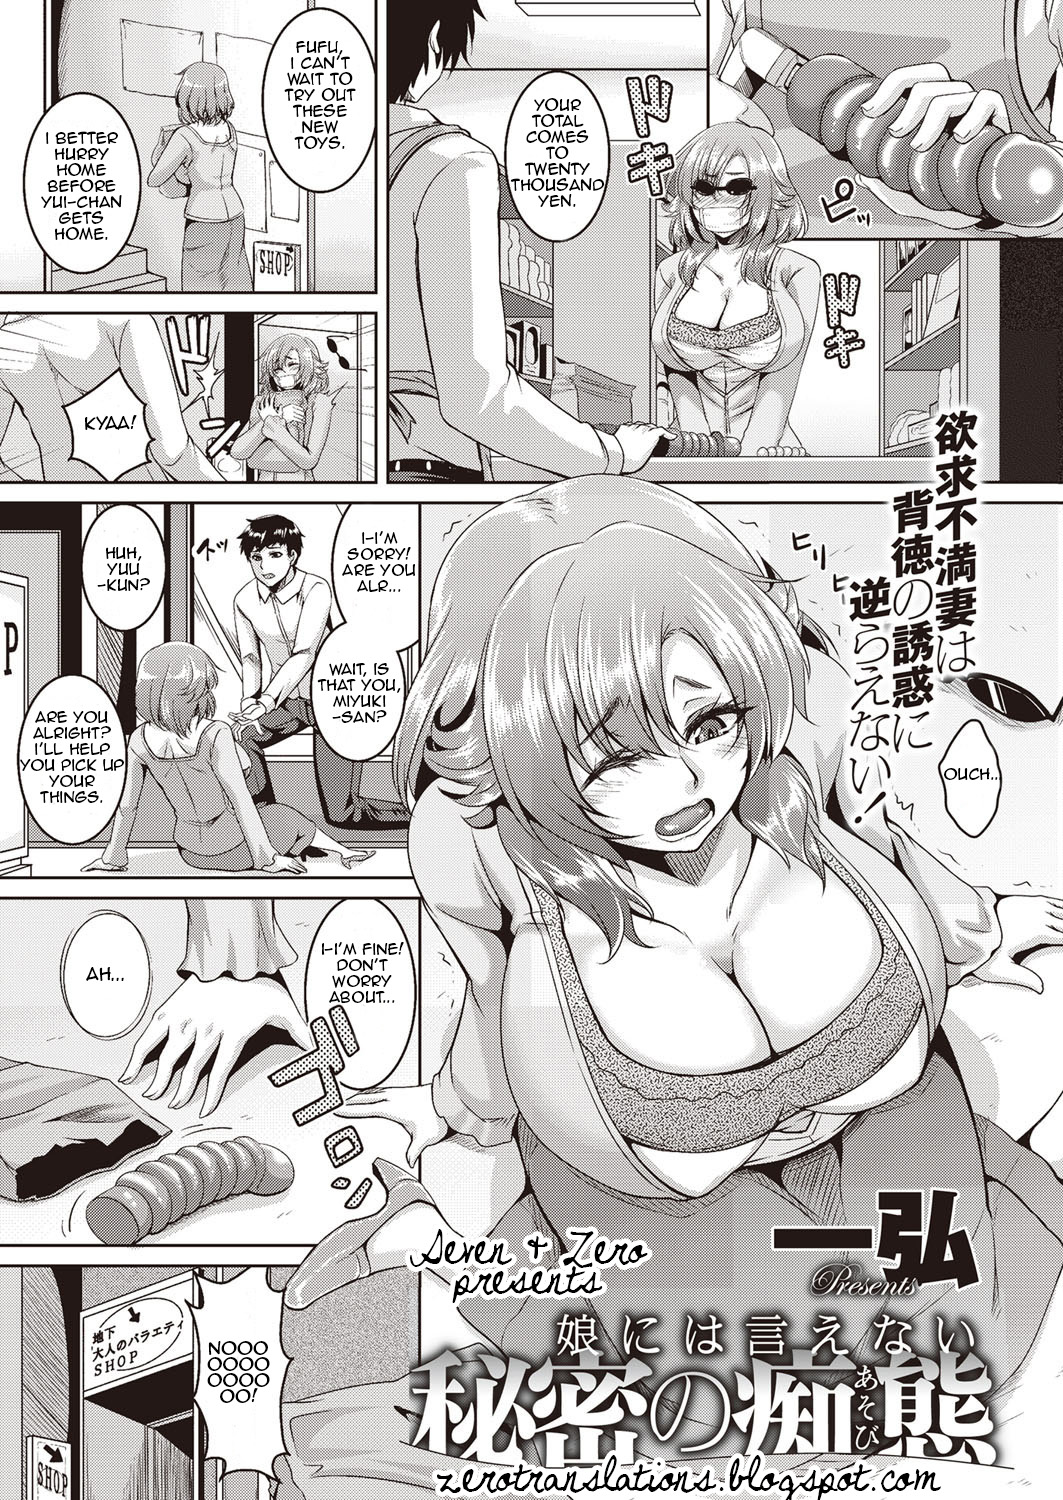 New sexy manga comic by Kazuhiro - Musume ni wa Ienai Himitsu no Chitai